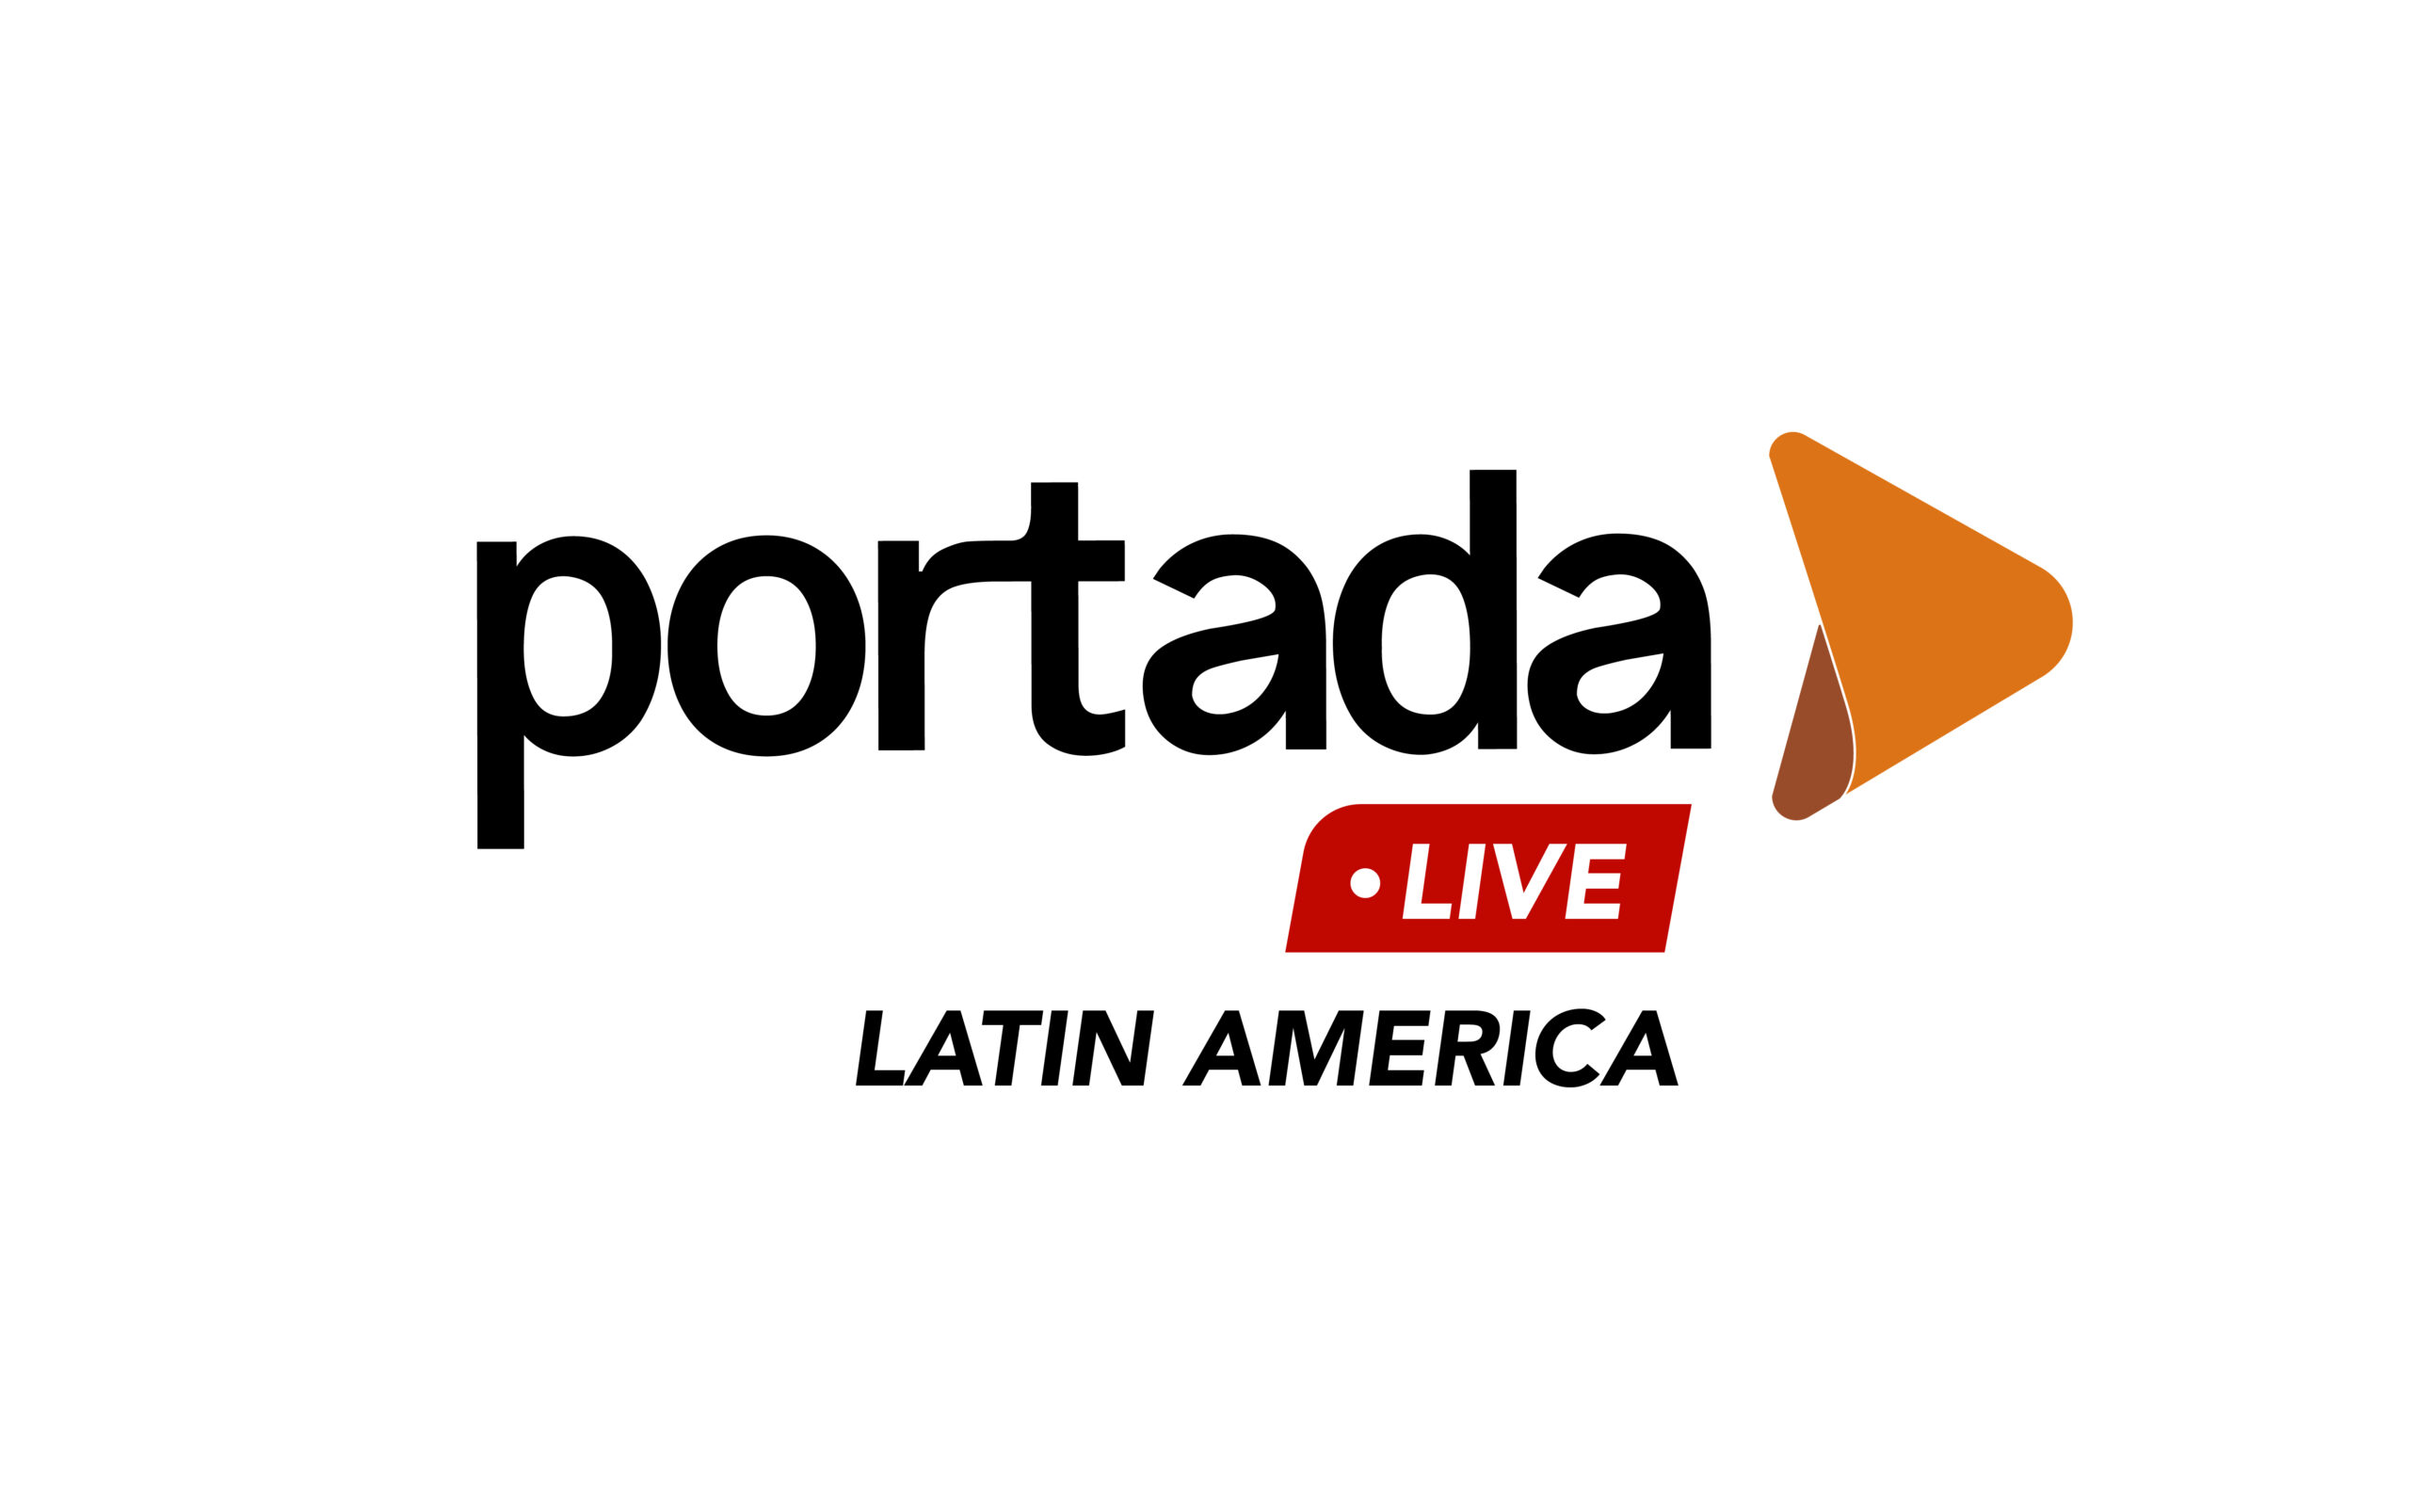 Portada Live Latin America